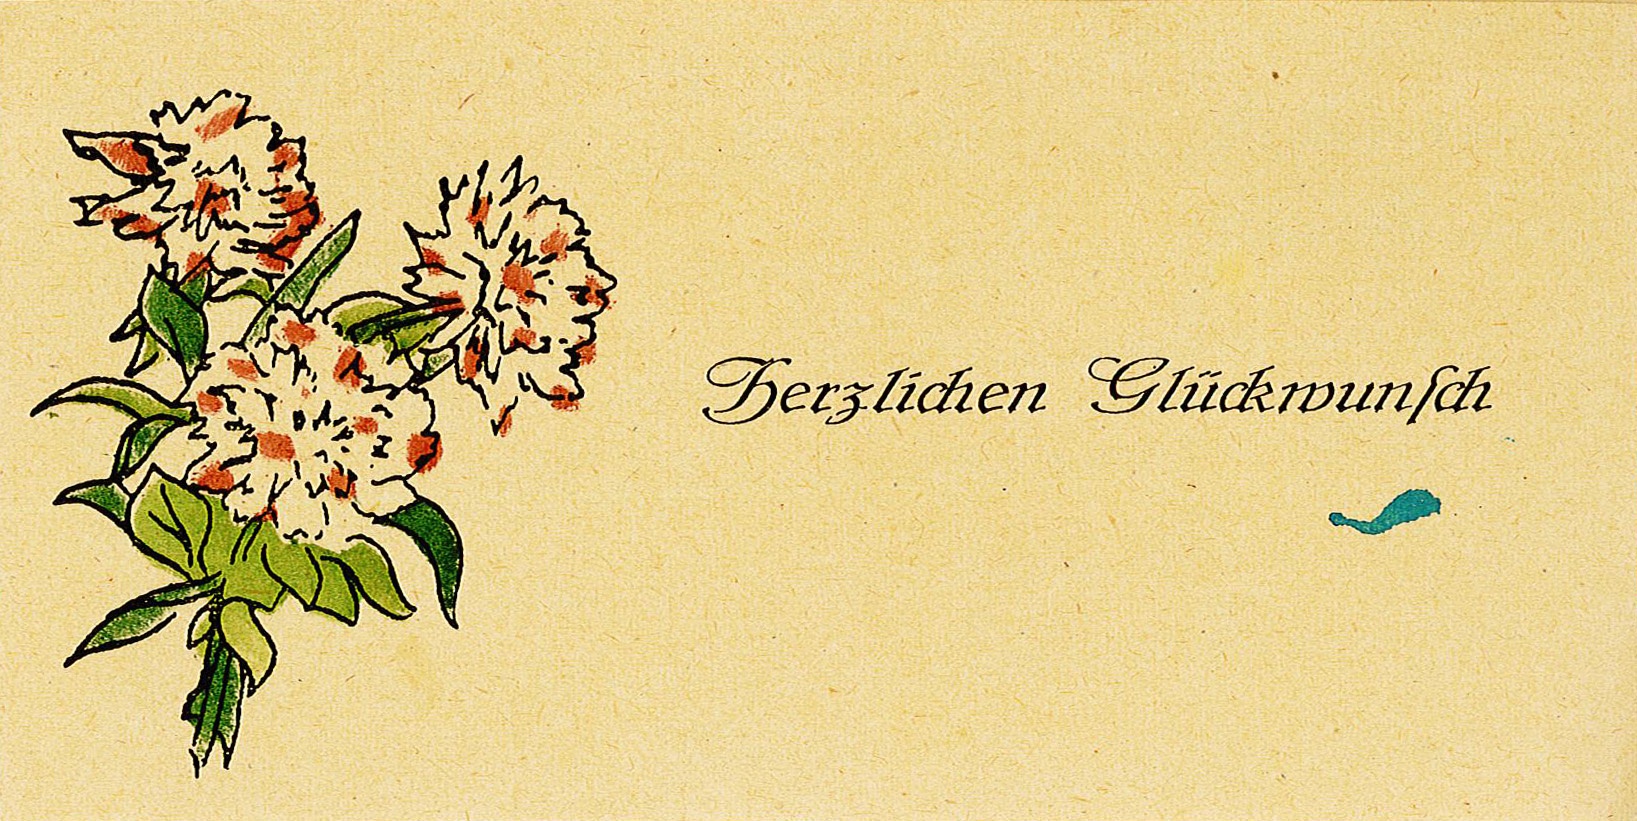 Glückwunschbrief zur Hochzeit an Ingeborg und Theodor Siebert von Familie Thran, 19. November 198 (Museum Wolmirstedt RR-F)